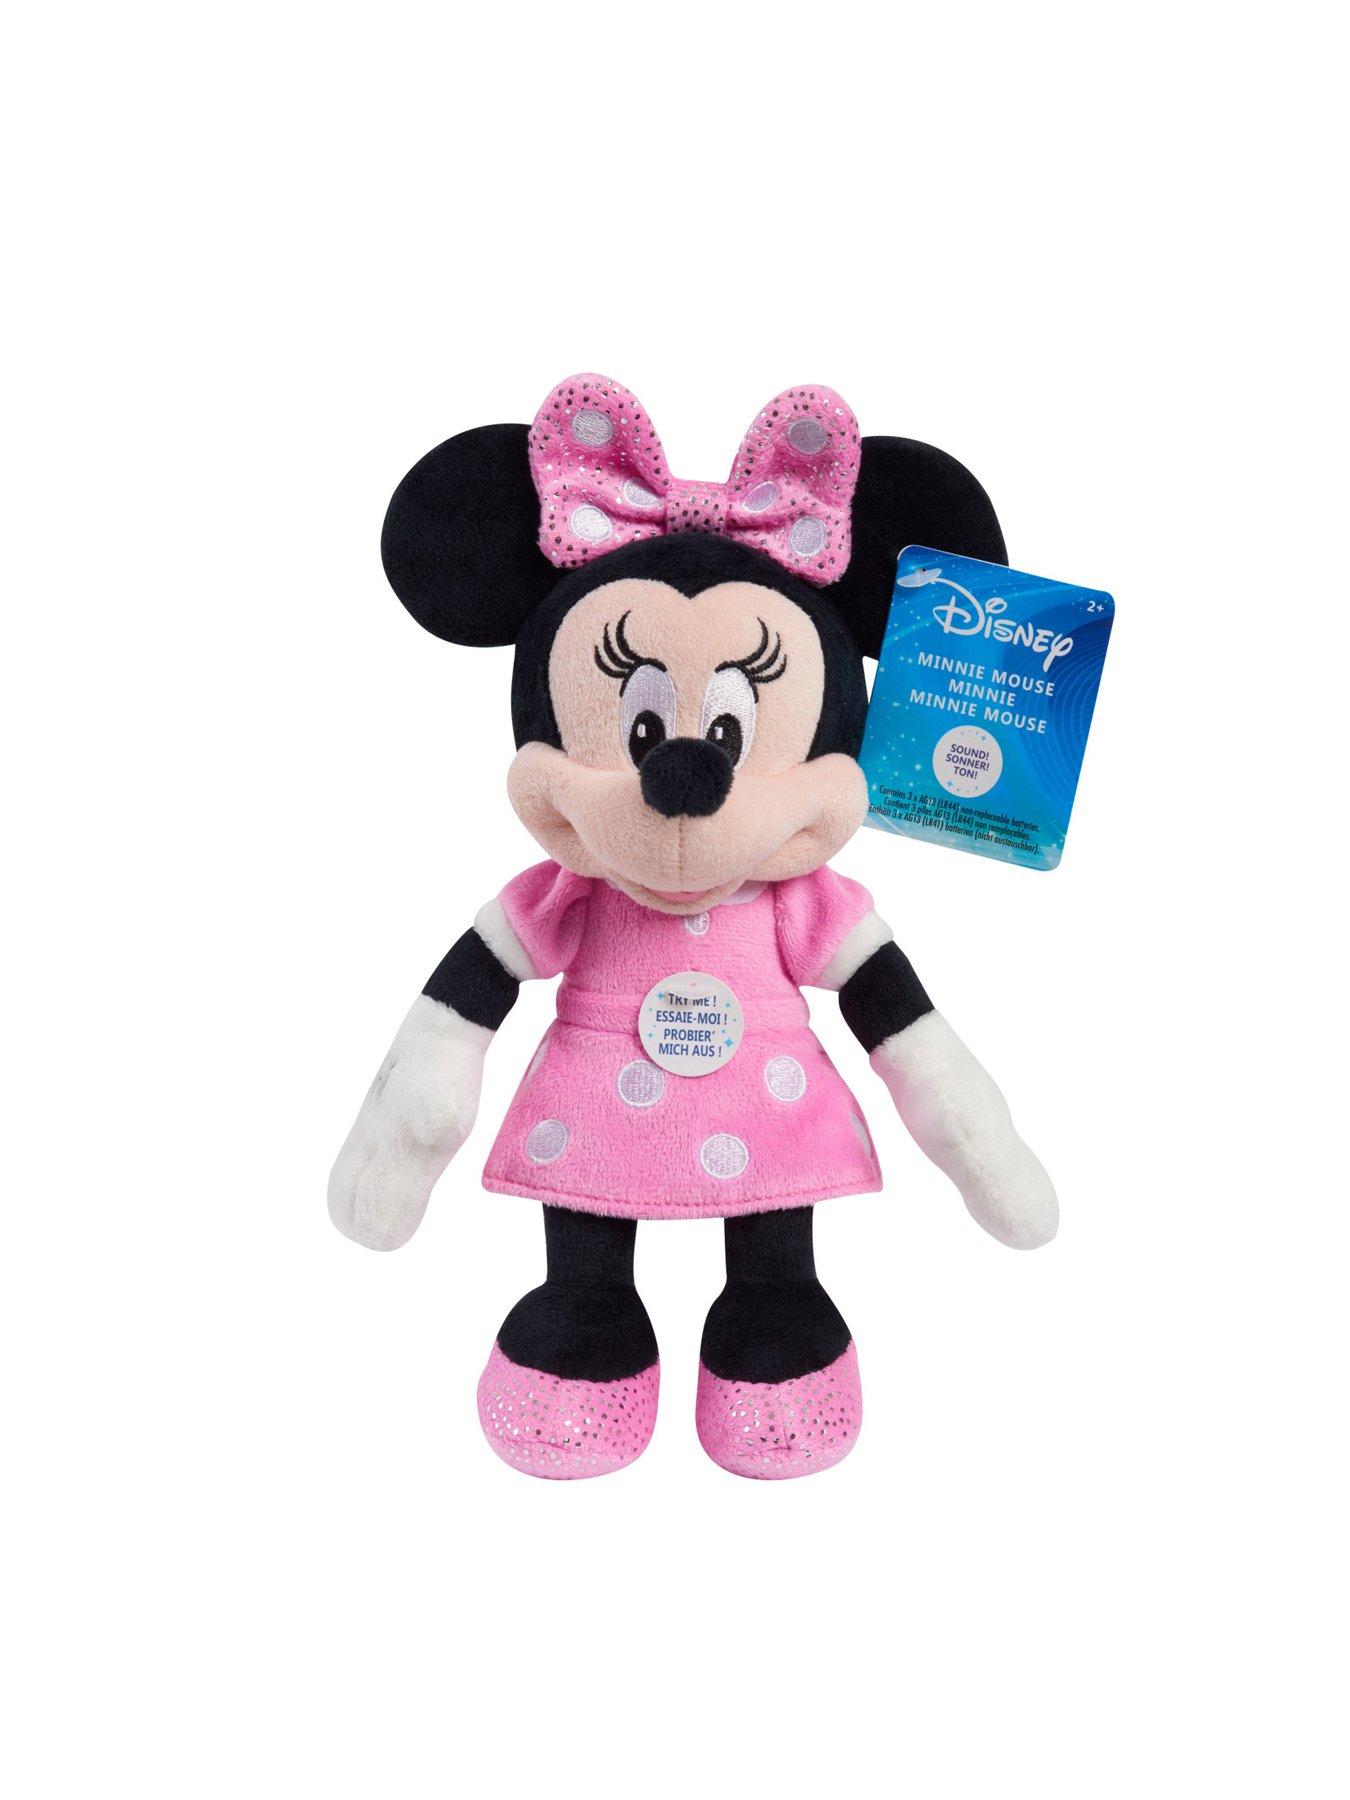 Pet Bowtique Minnie Mouse juguetes Disney en Español - Minnie Mouse toys 